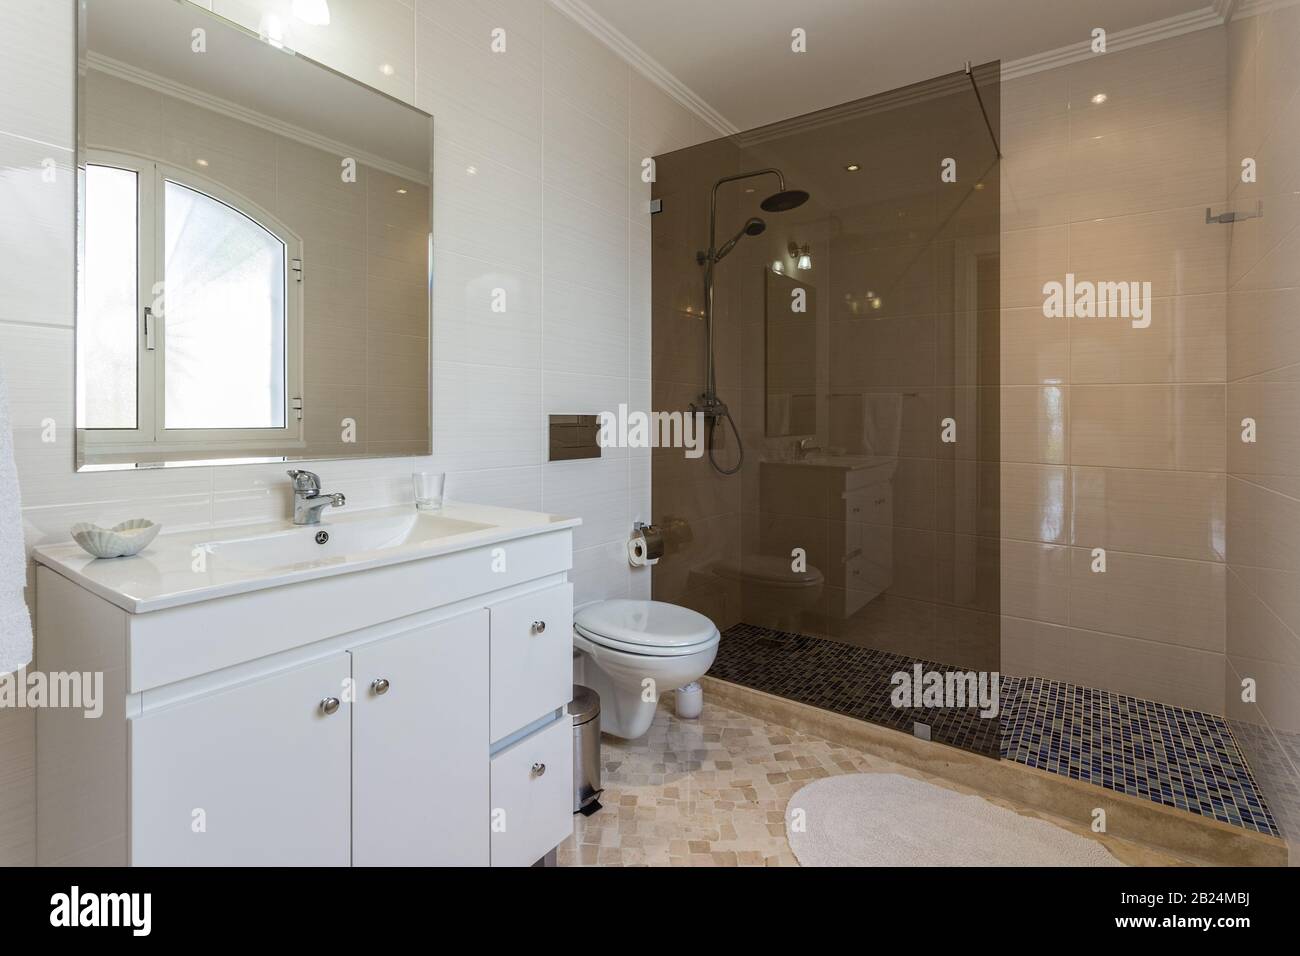 Chambres élégantes avec douche et baignoire dans un décor contemporain Banque D'Images